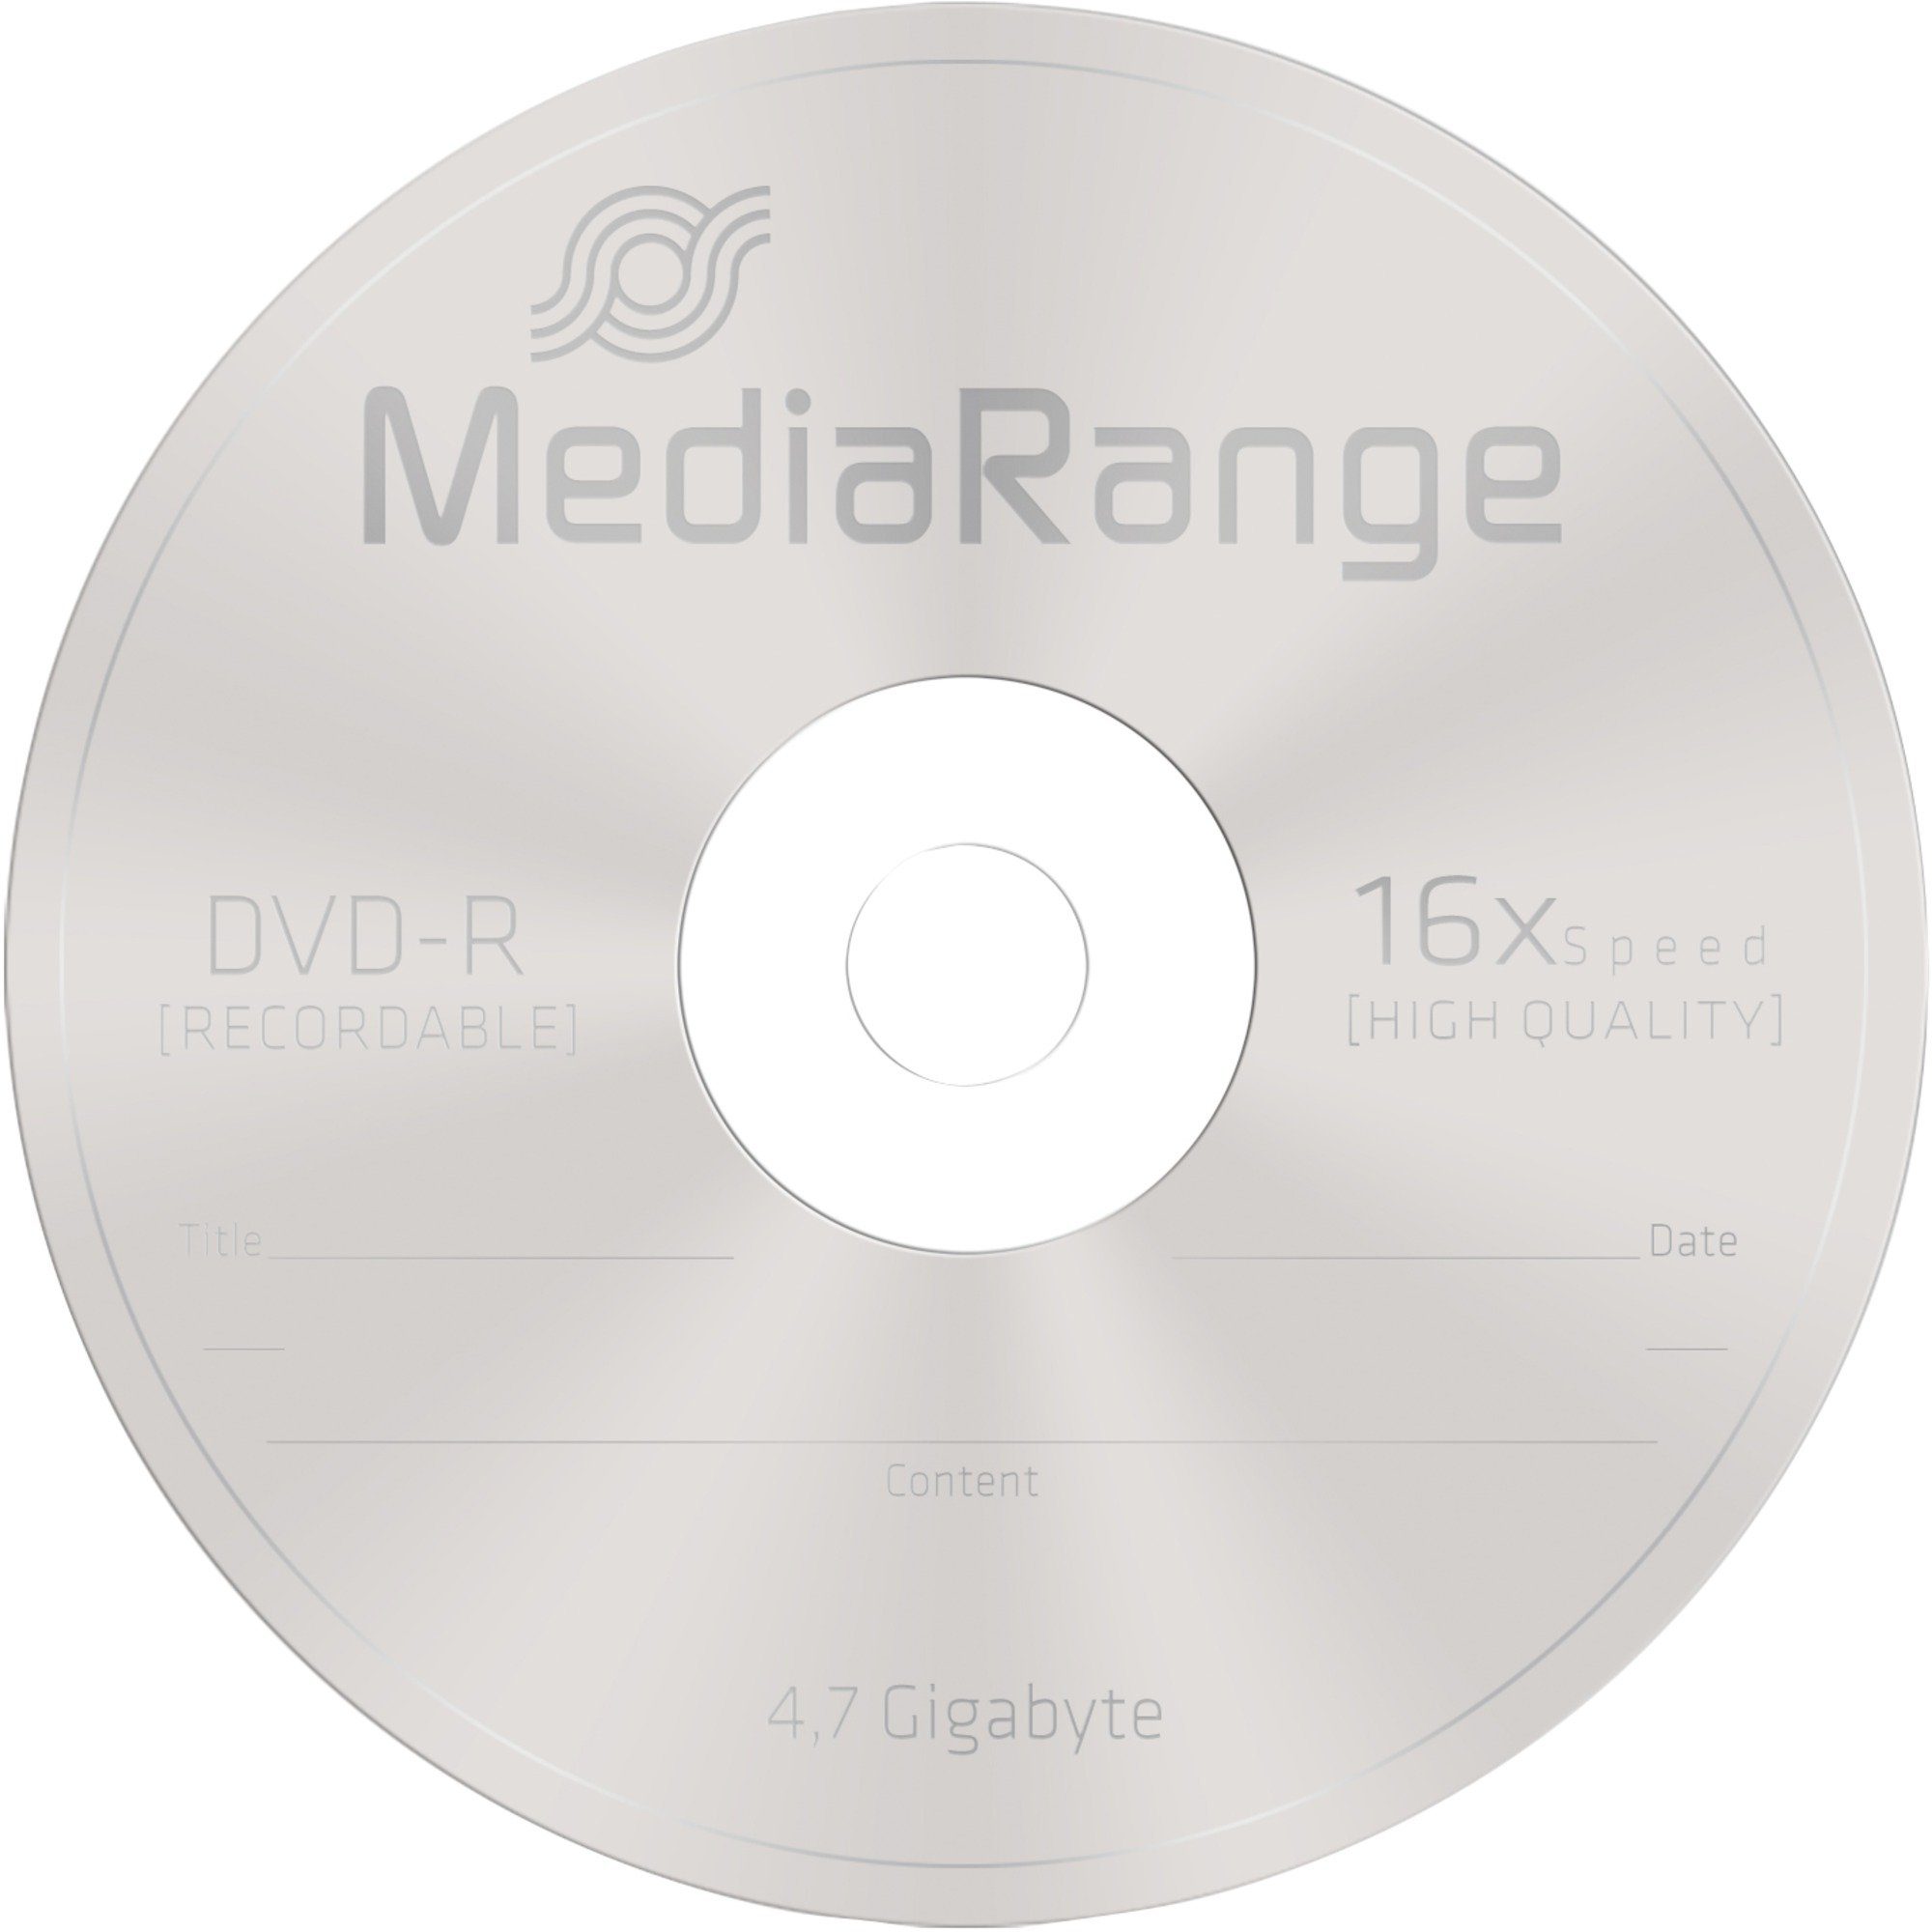 4,7 MediaRange DVD-R GB, Mediarange DVD-Rohling DVD-Rohlinge, (16fach